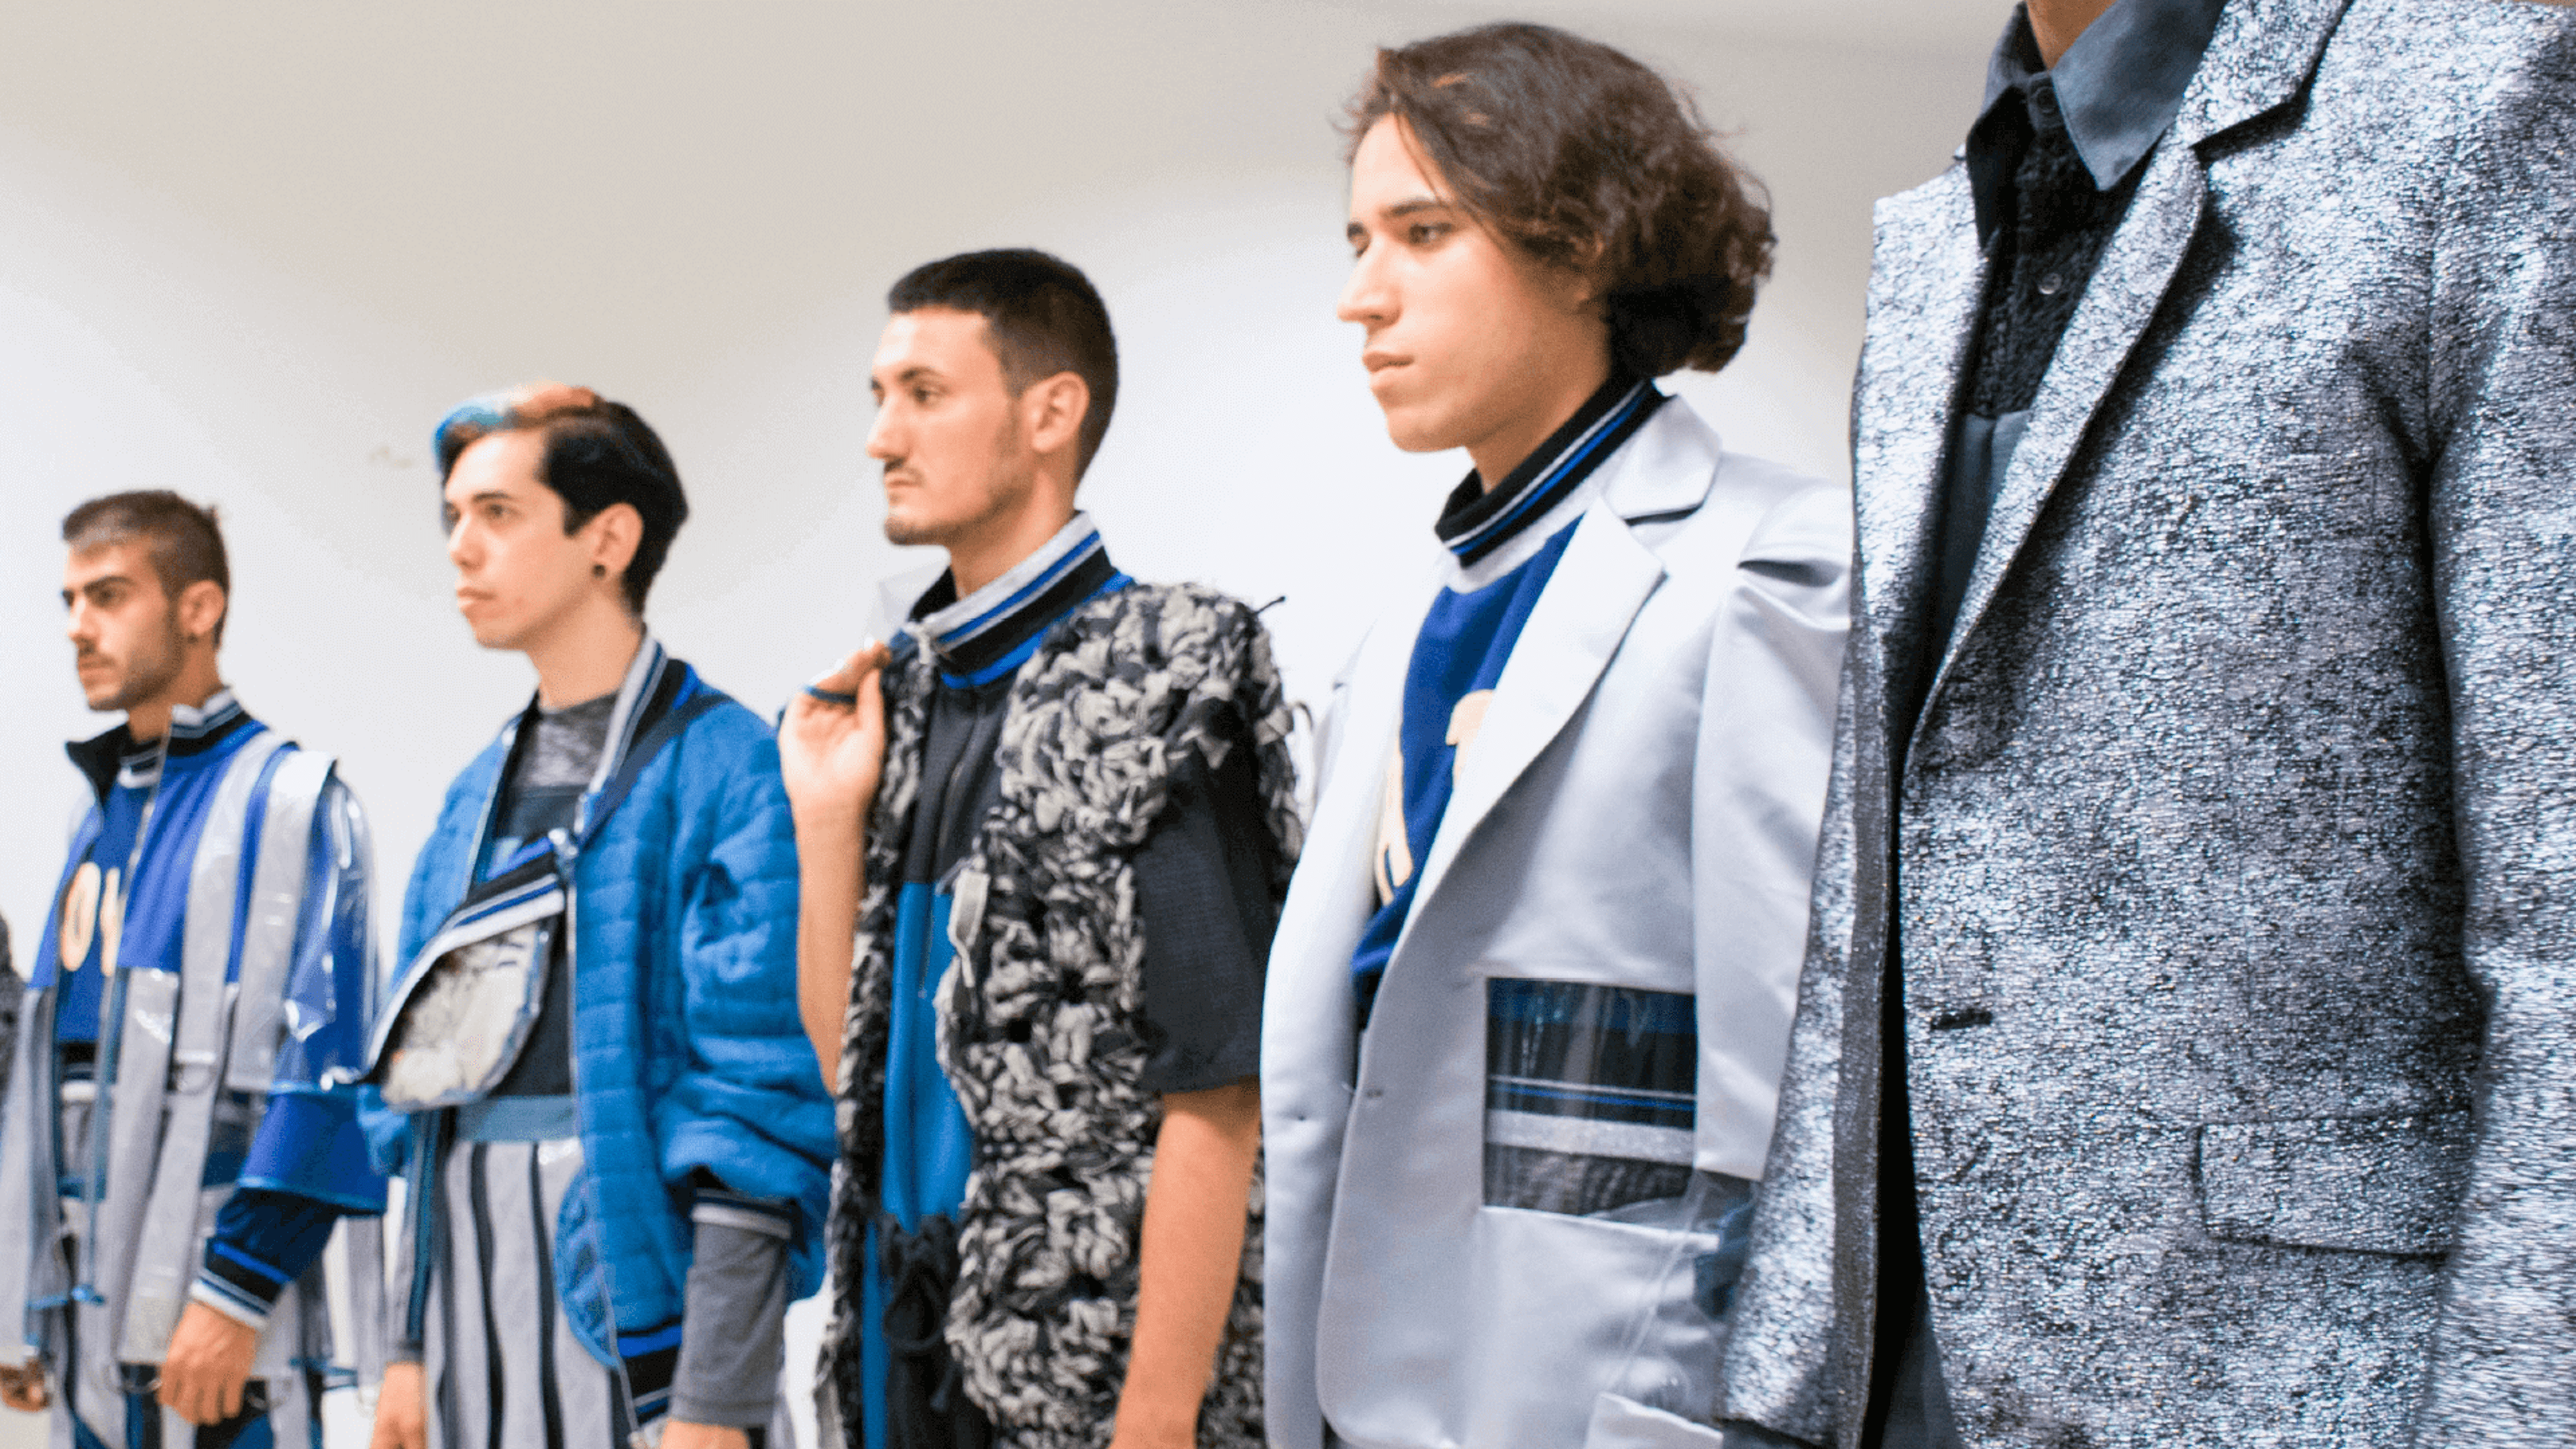 Models en una passarel·la presentant una col·lecció de moda masculina, amb dissenys moderns que barregen patrons i textures.

